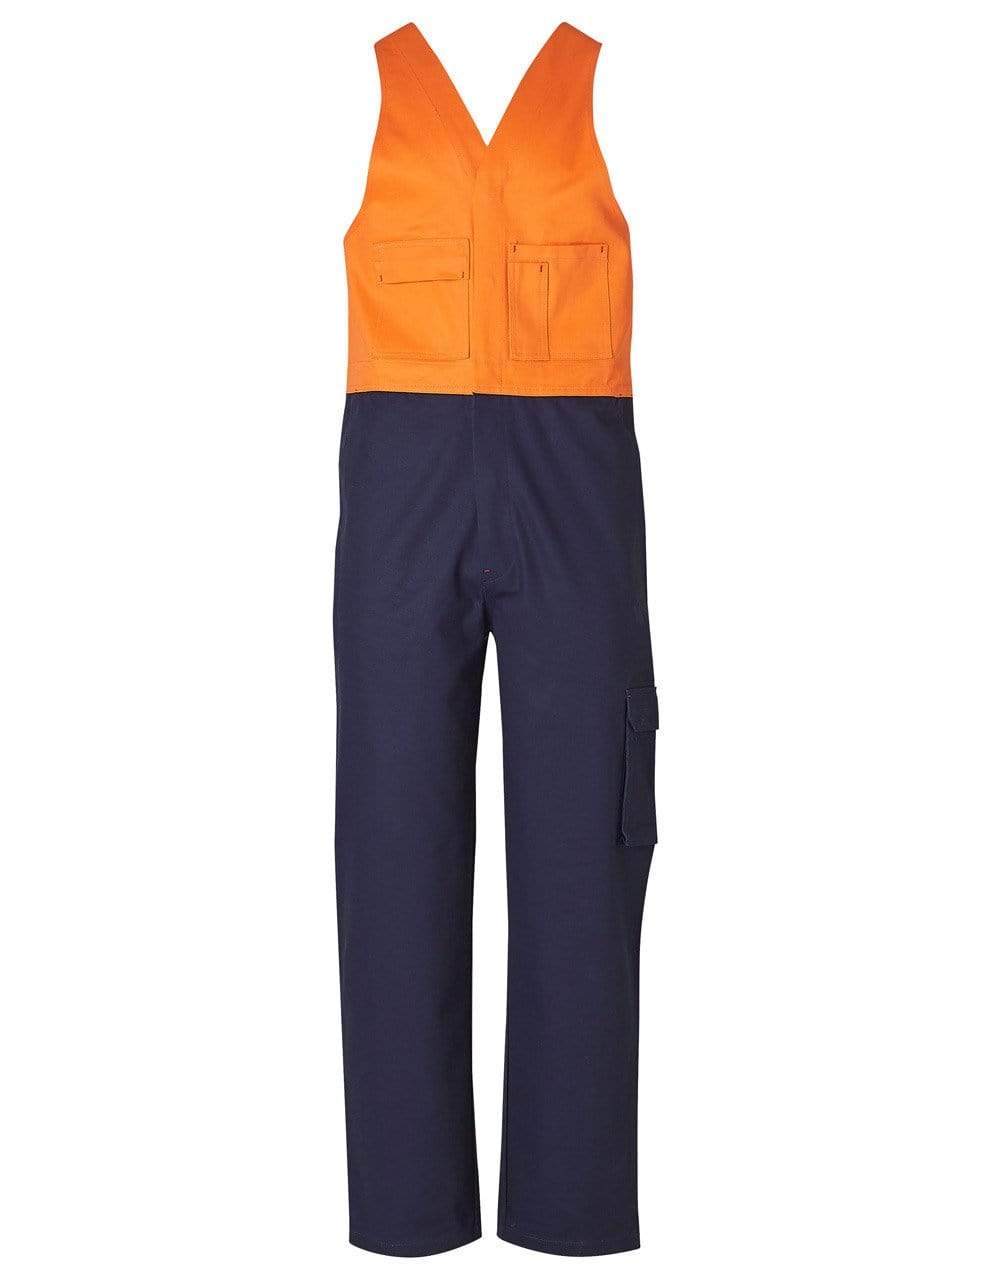 Men's Overall Stout Size SW202 Work Wear Australian Industrial Wear 87S Fluoro Orange/Navy 